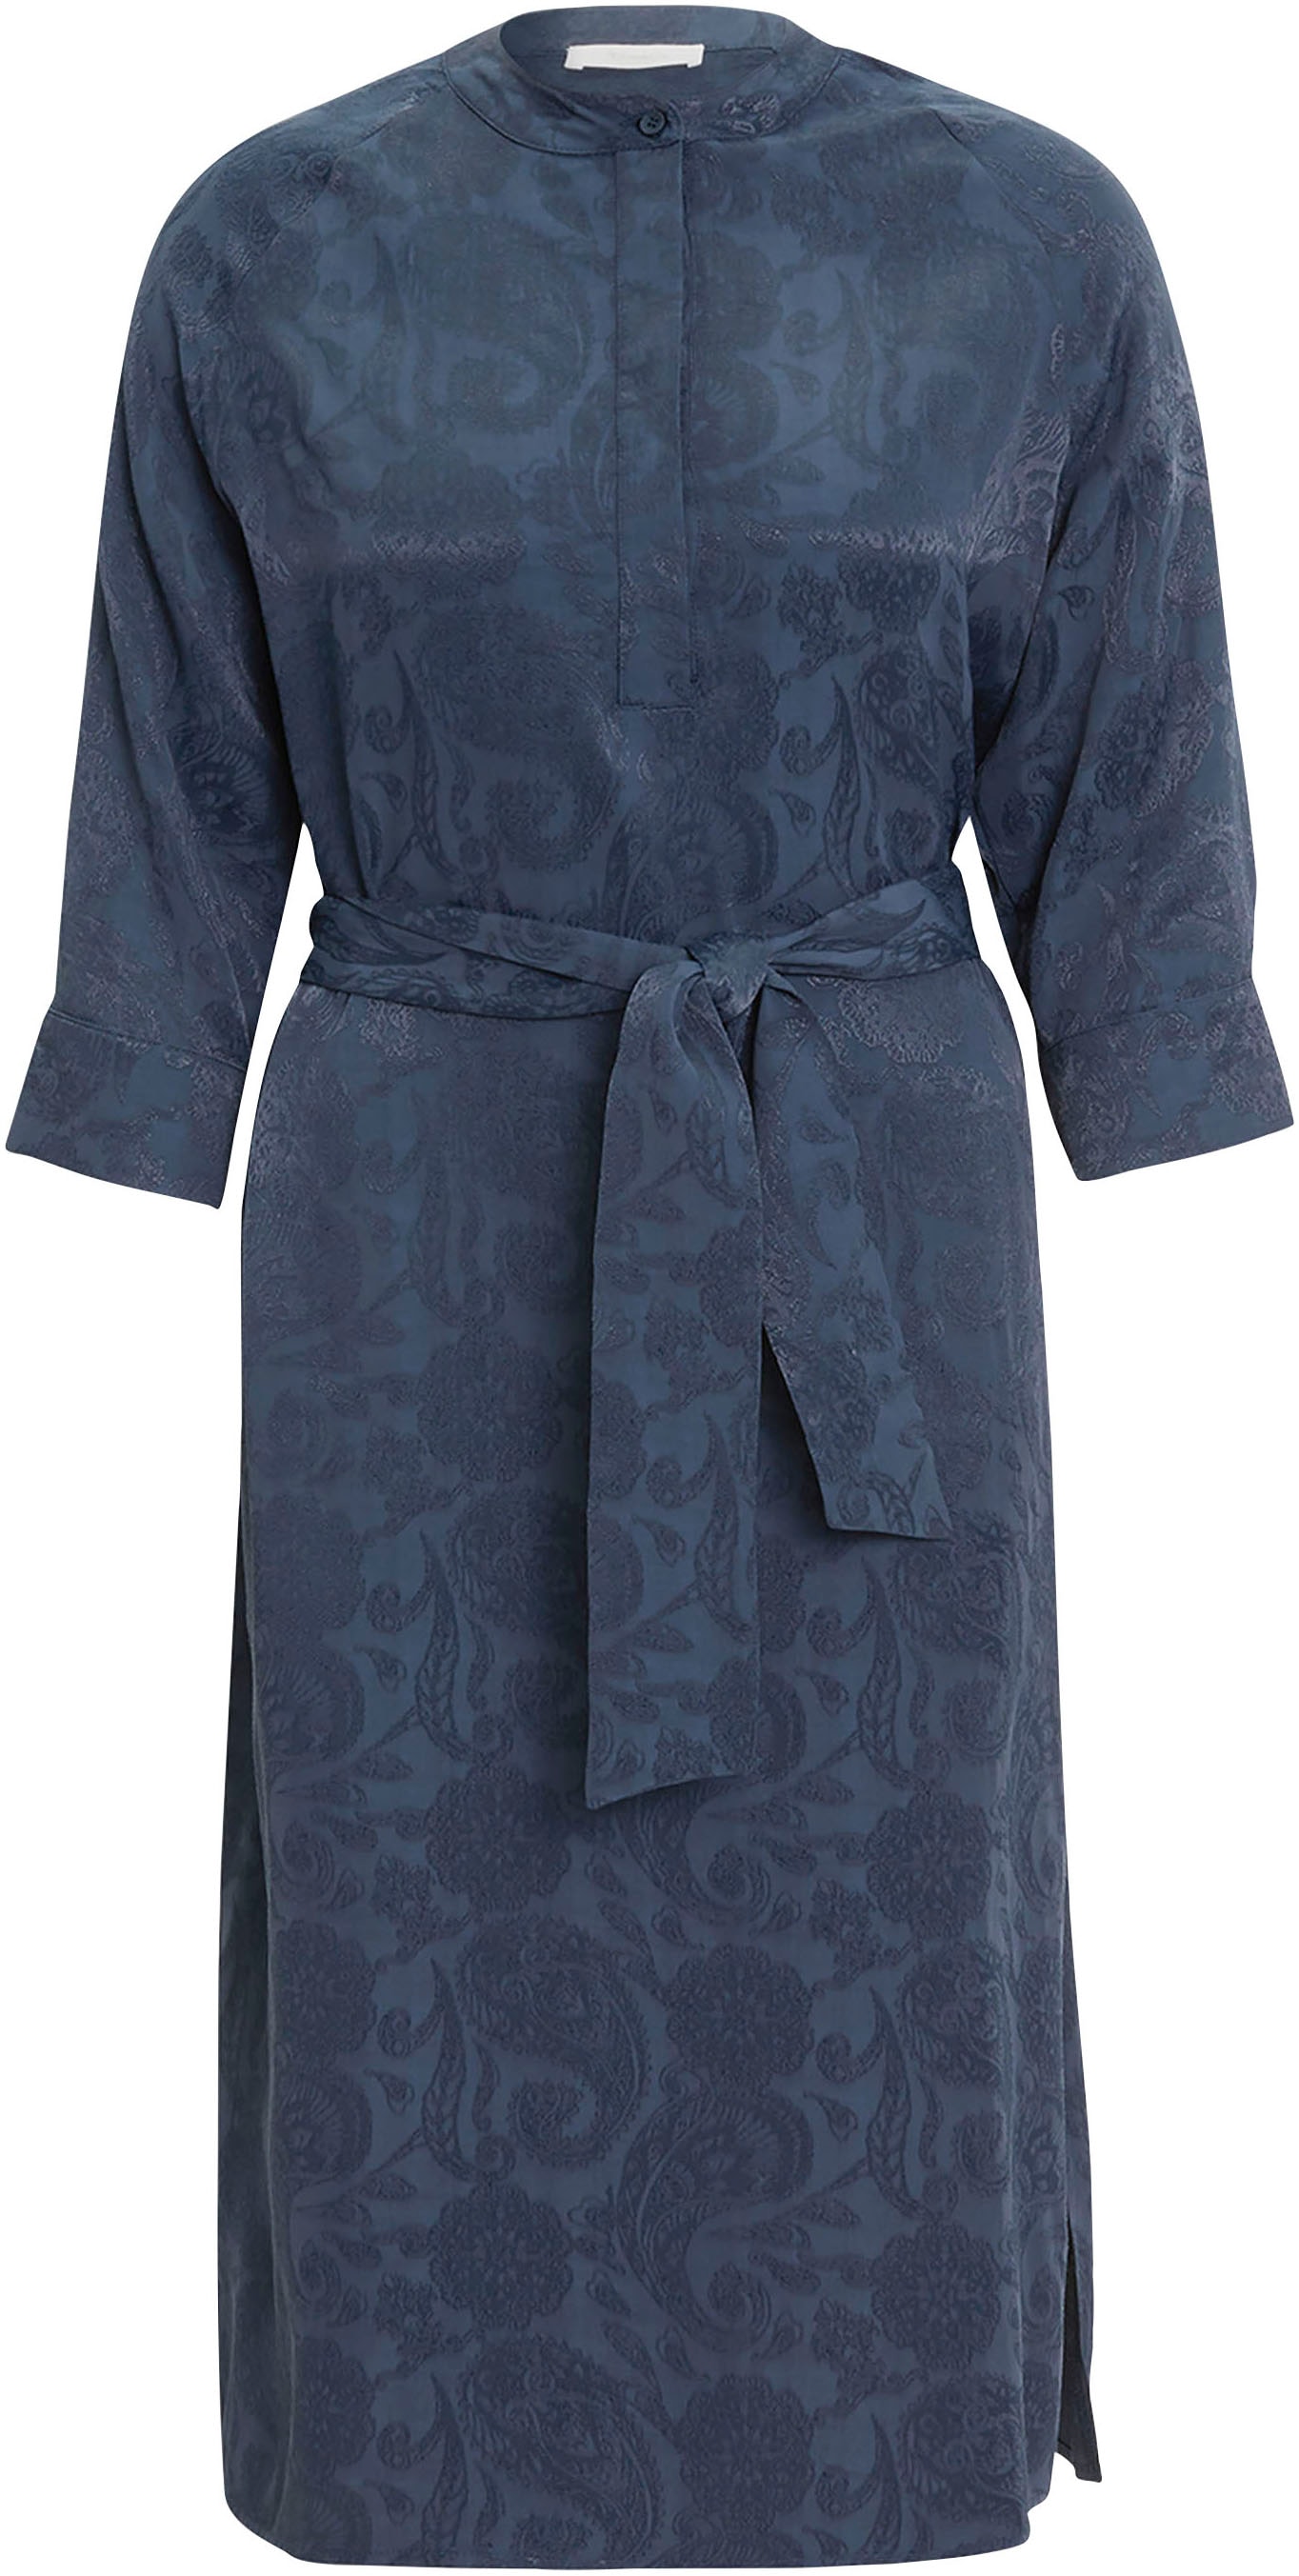 Tamaris Hemdblusenkleid, mit glänzenden Paisley-Muster NEUE kaufen - KOLLEKTION